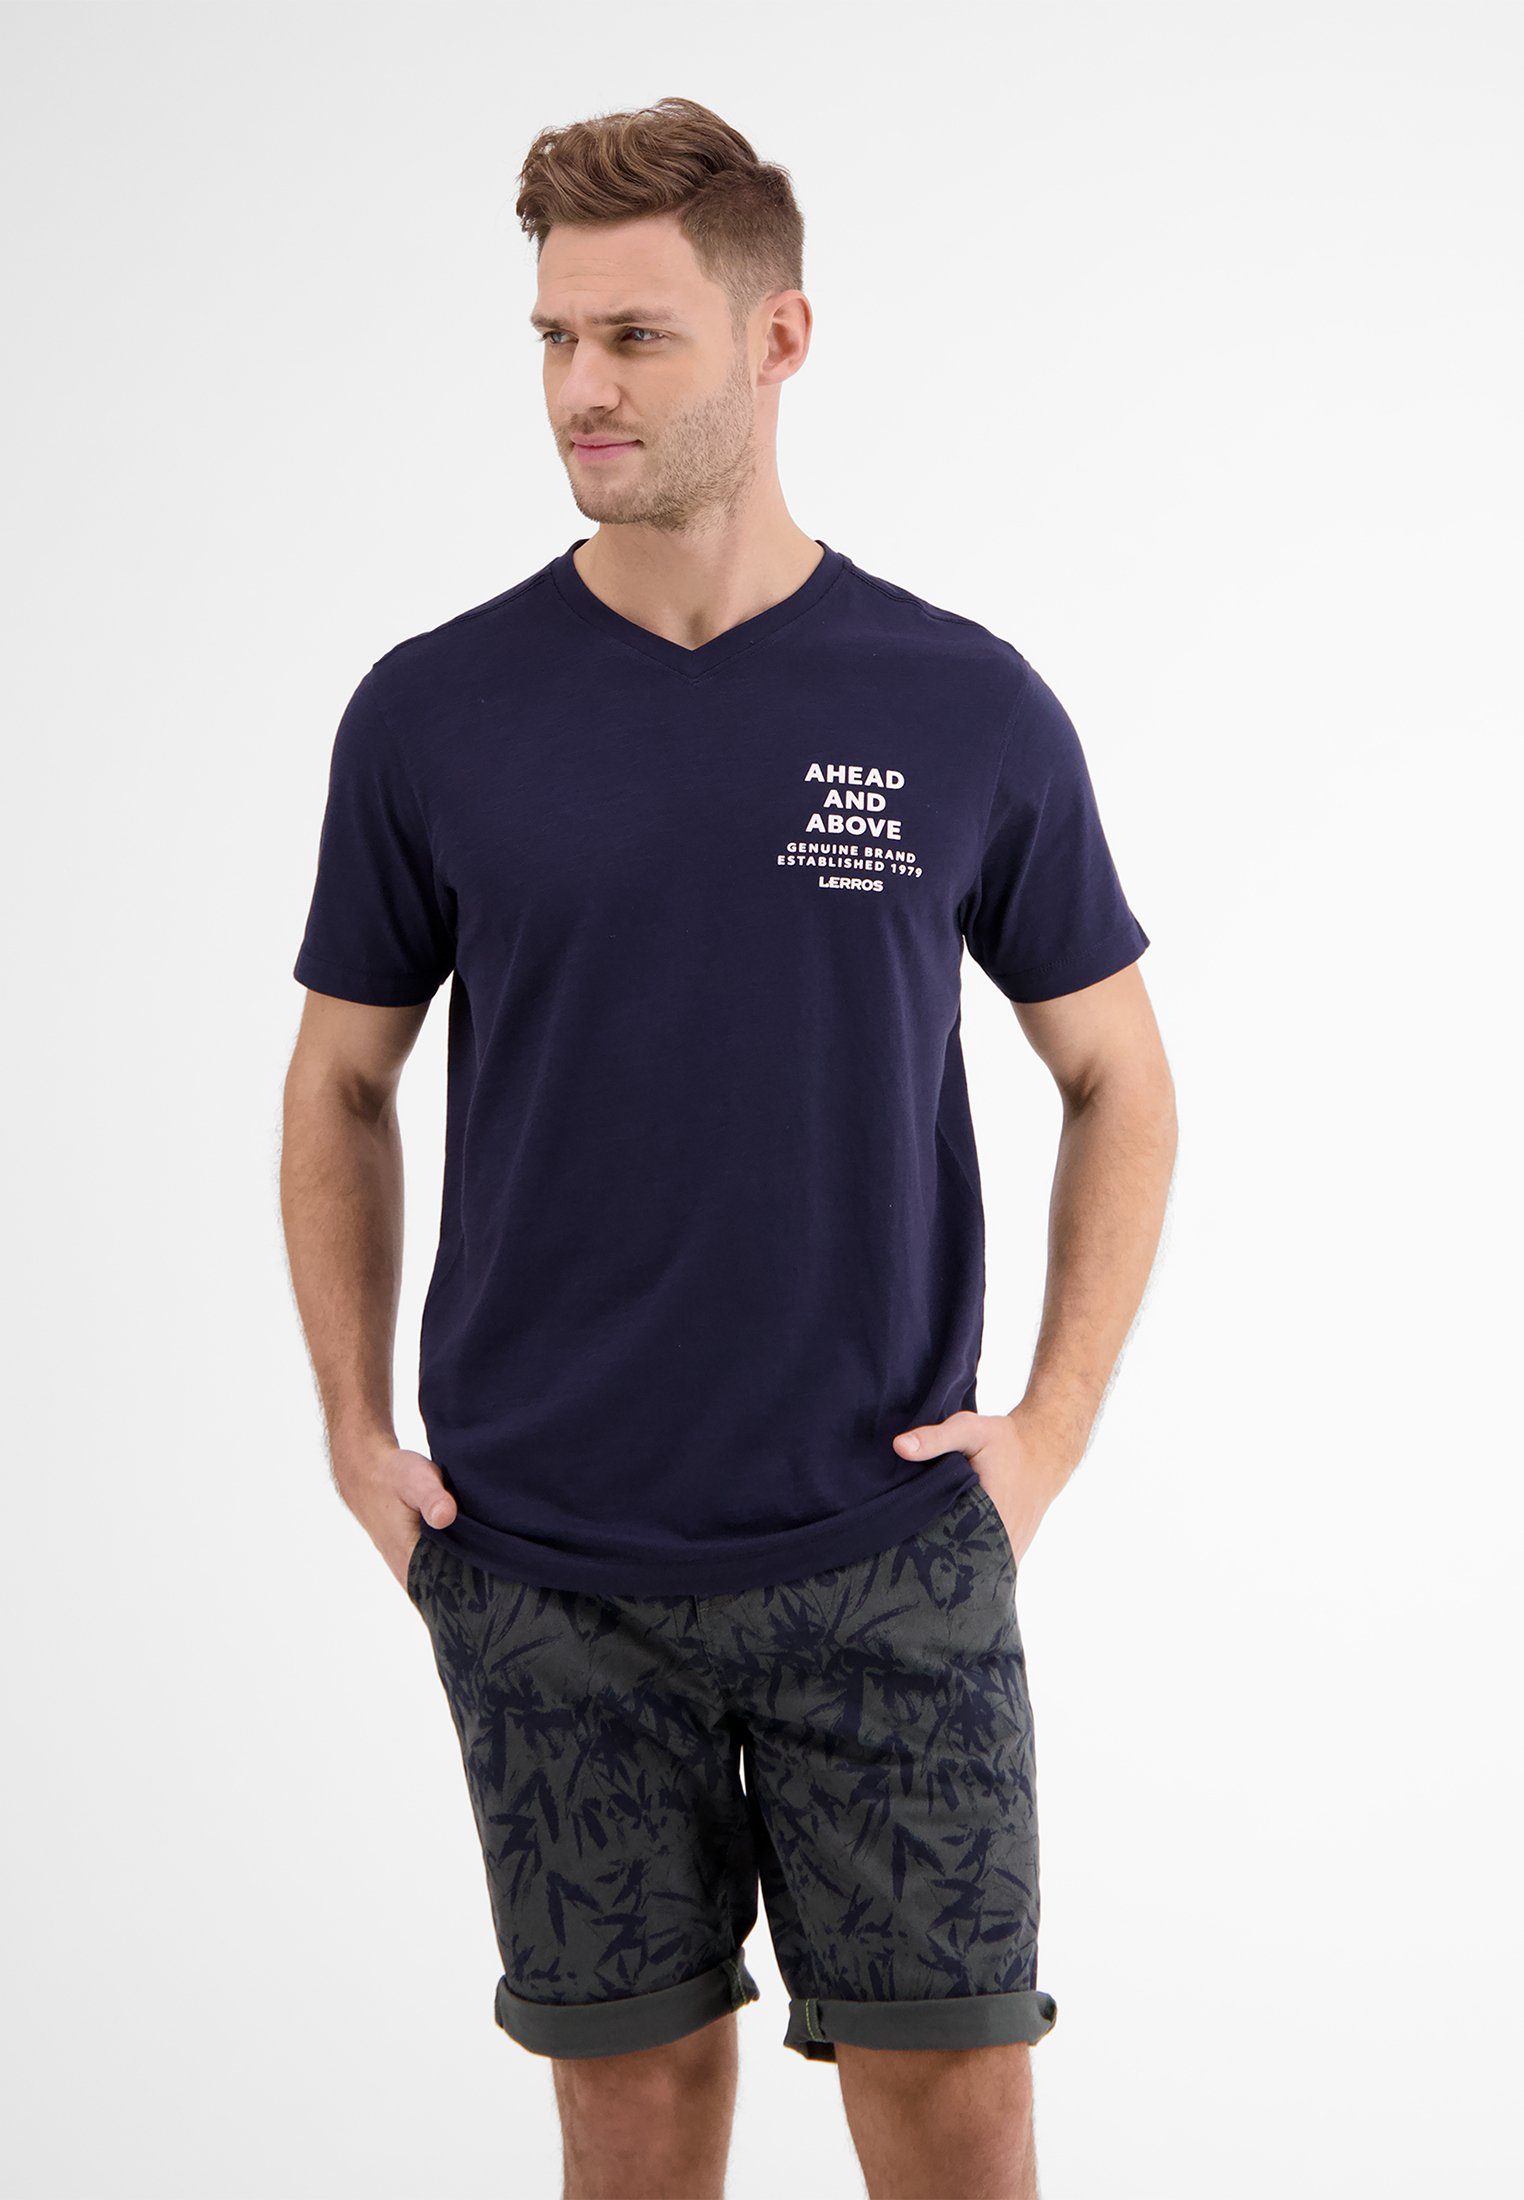 Von internationalen Prominenten bevorzugt LERROS T-Shirt LERROS V-Neck-Shirt NAVY *Ahead & CLASSIC Above